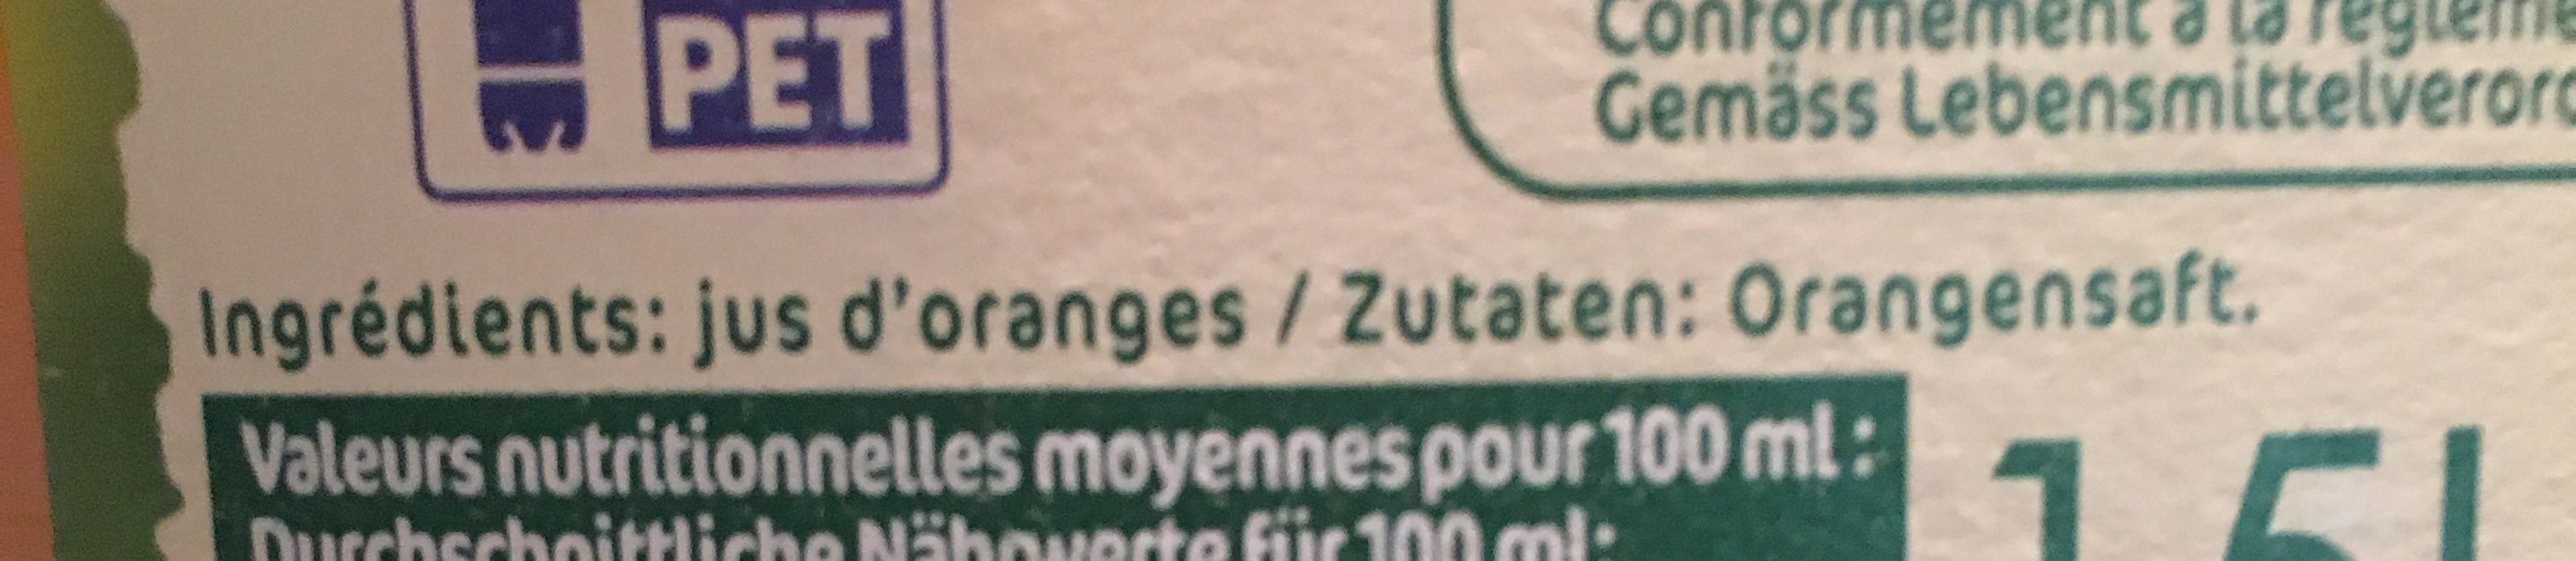 Orangensaft - Zutaten - fr